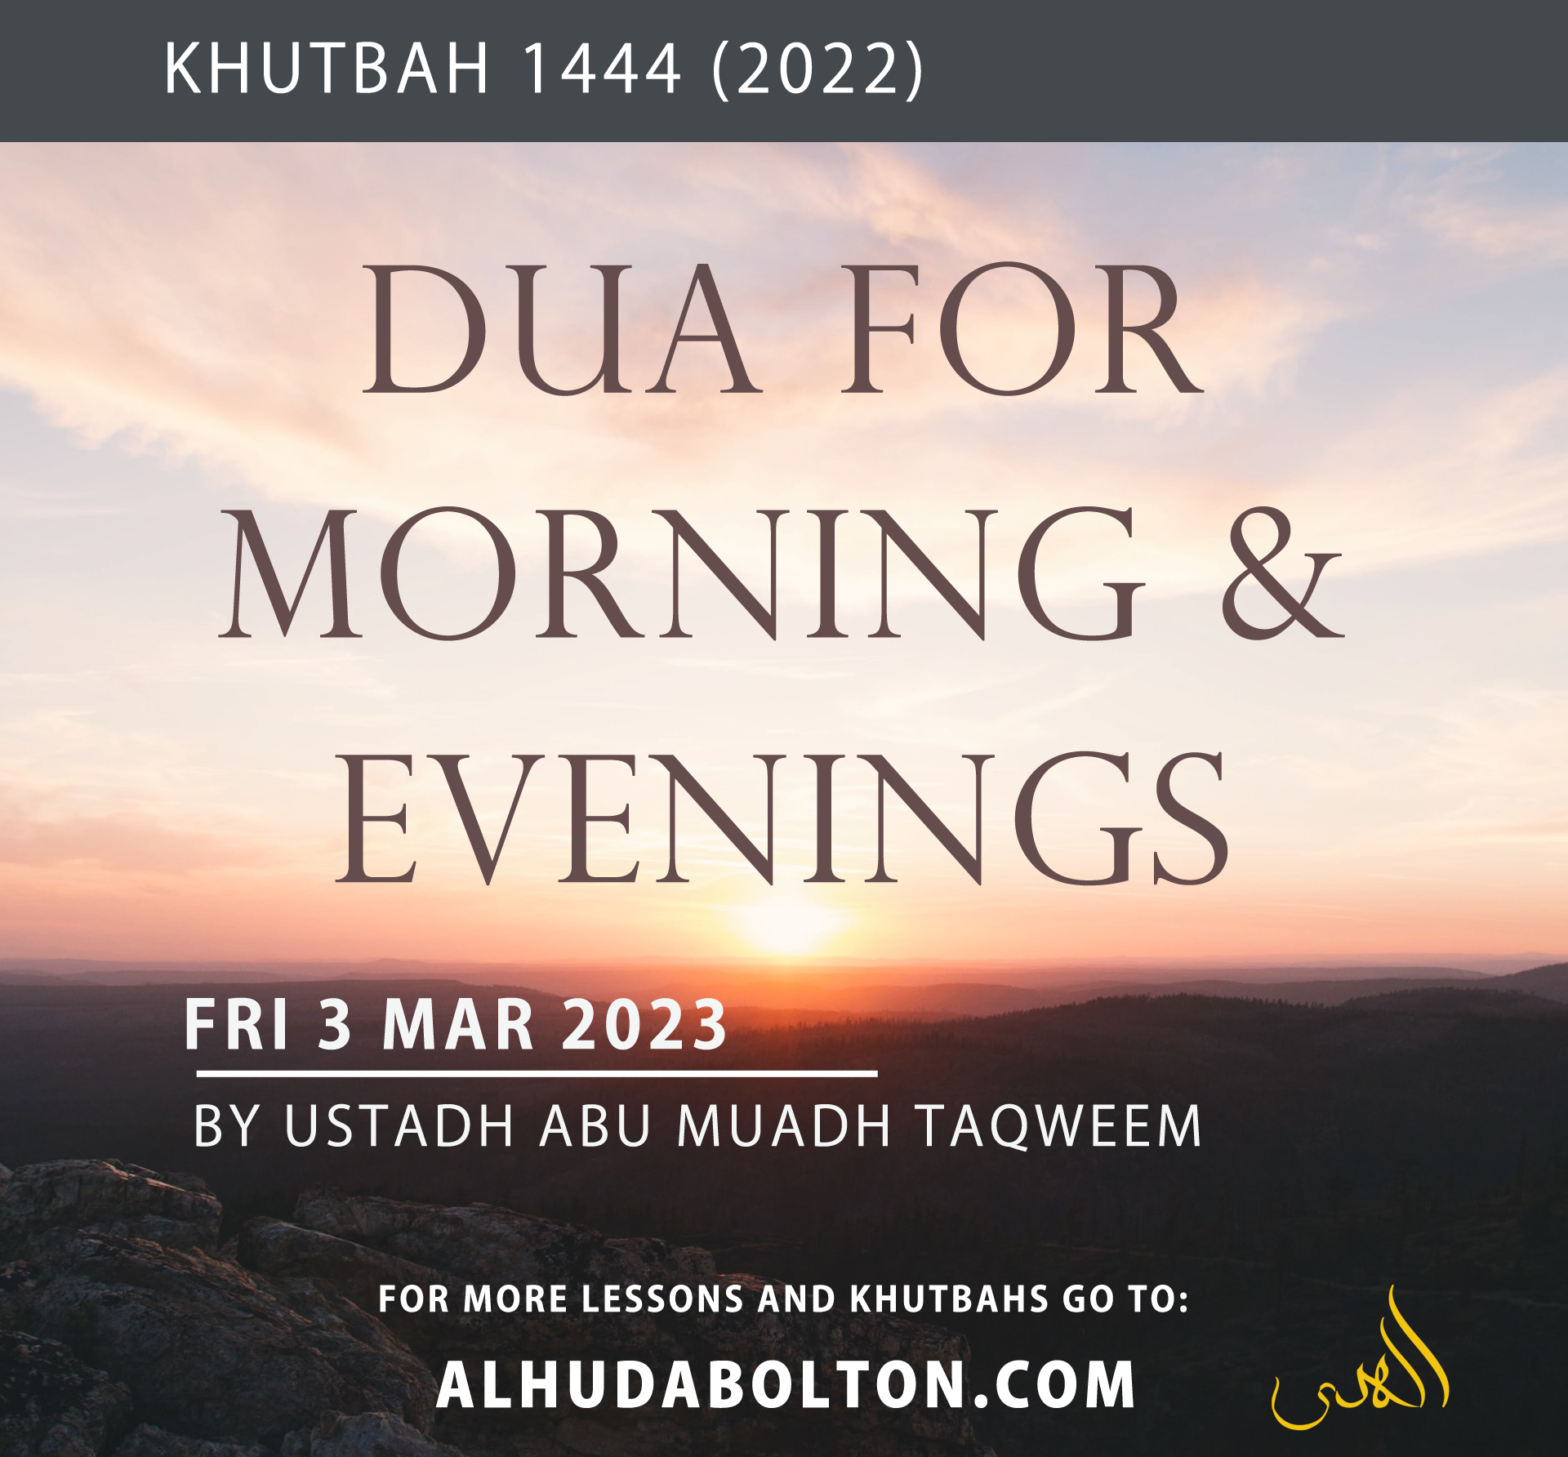 Khutbah: Dua for Morning & Evenings